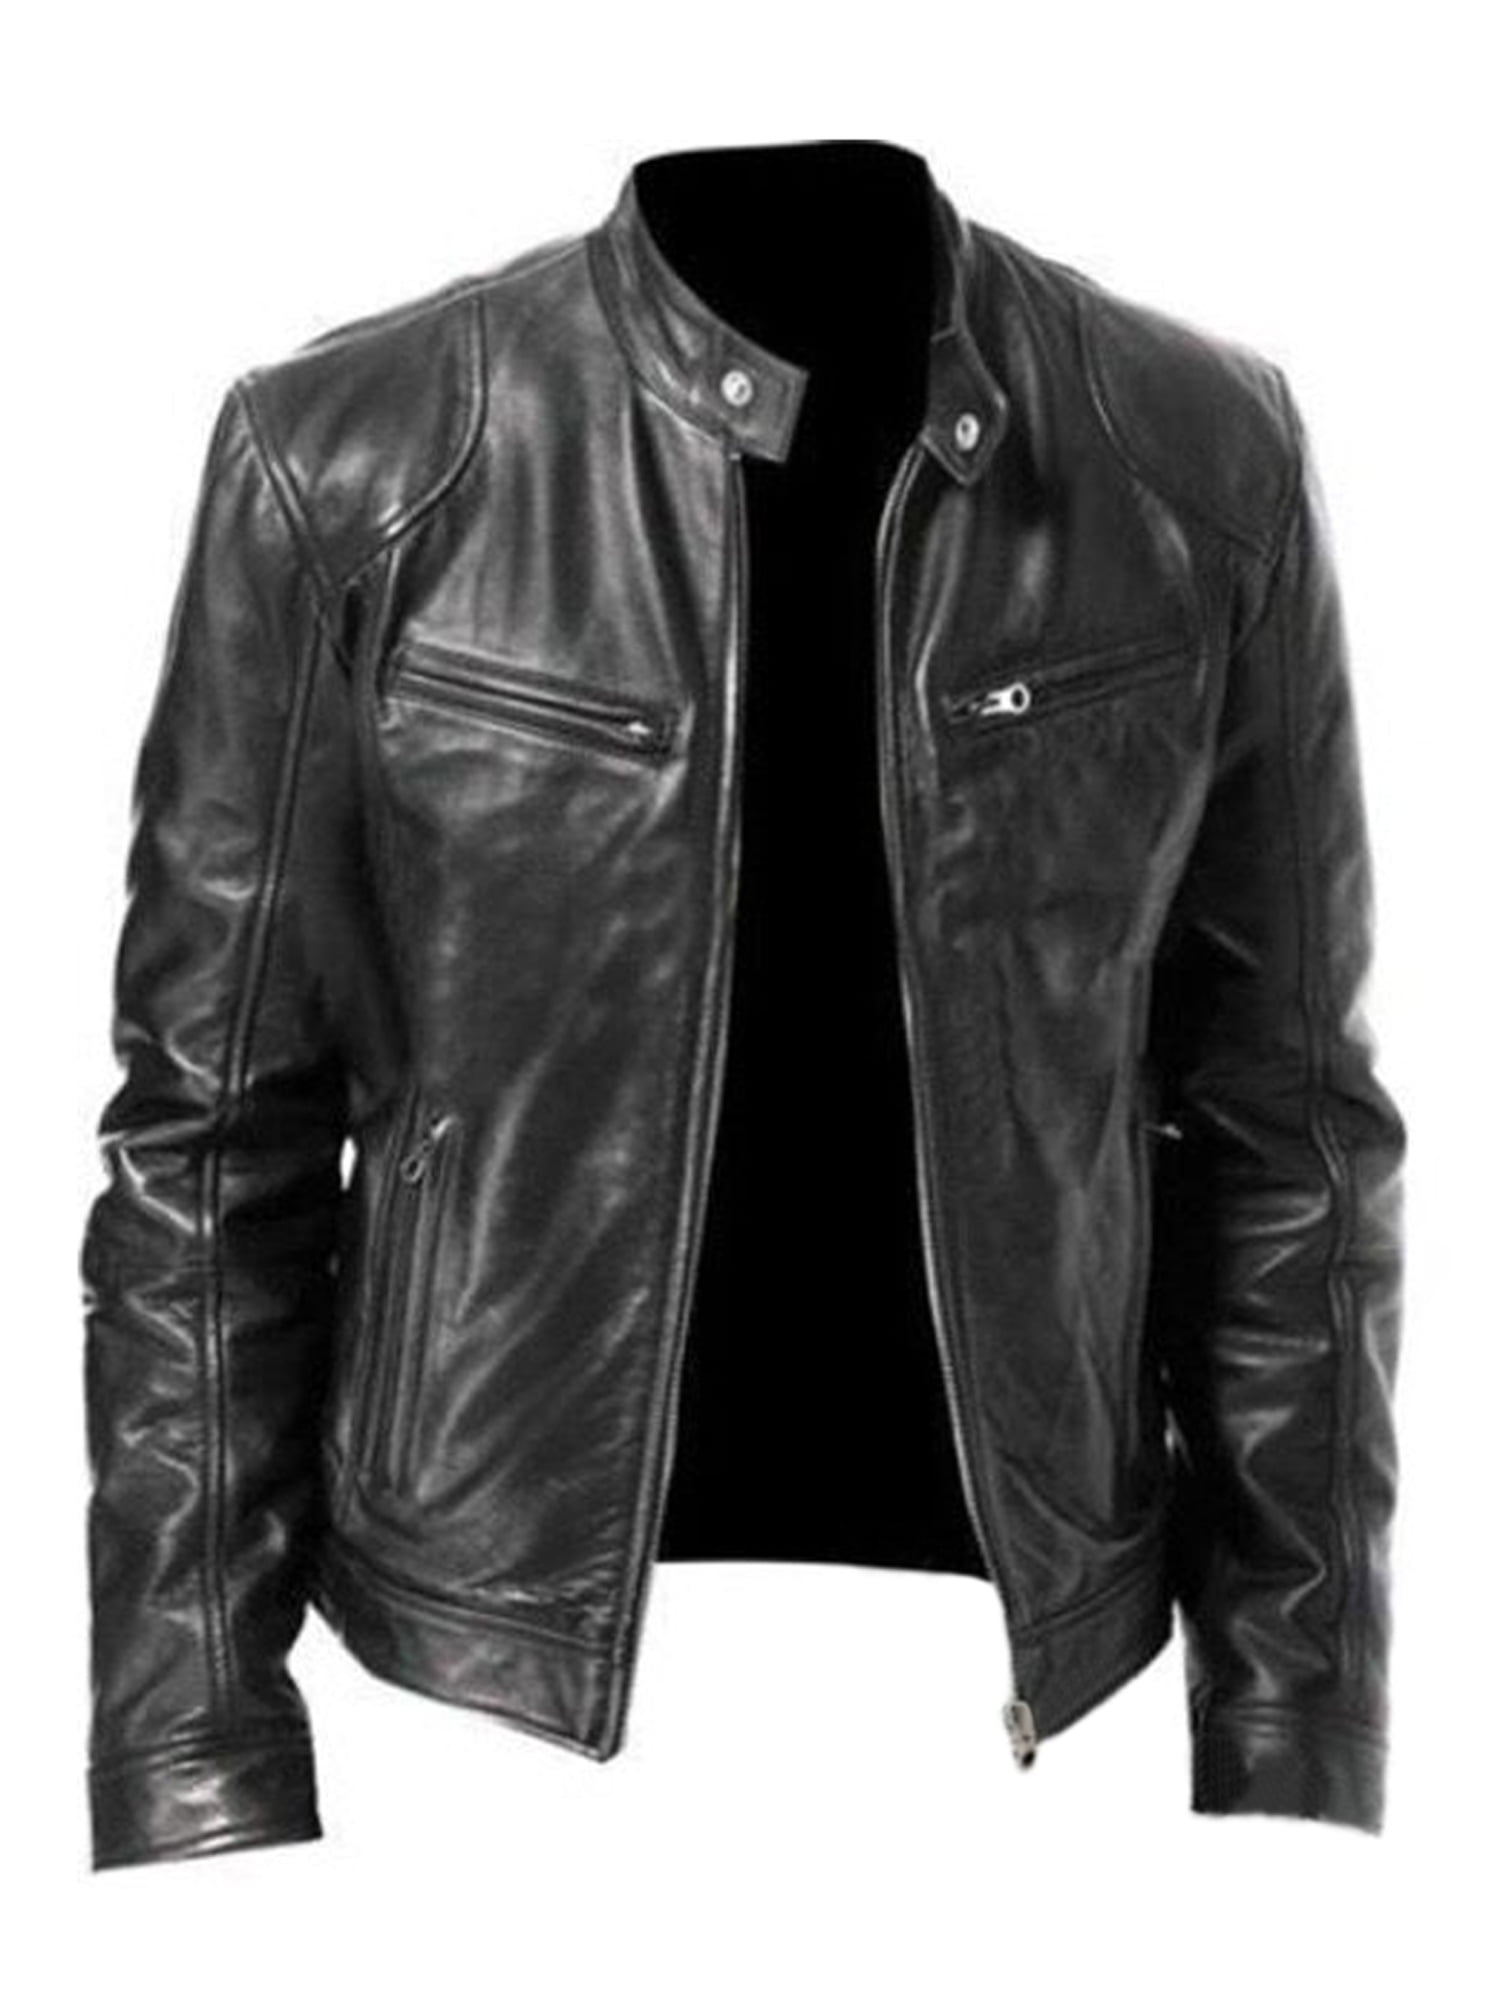 Mens Real Black Genuine Leather Motorbike Motorcycle Biker Club Casual Jacket